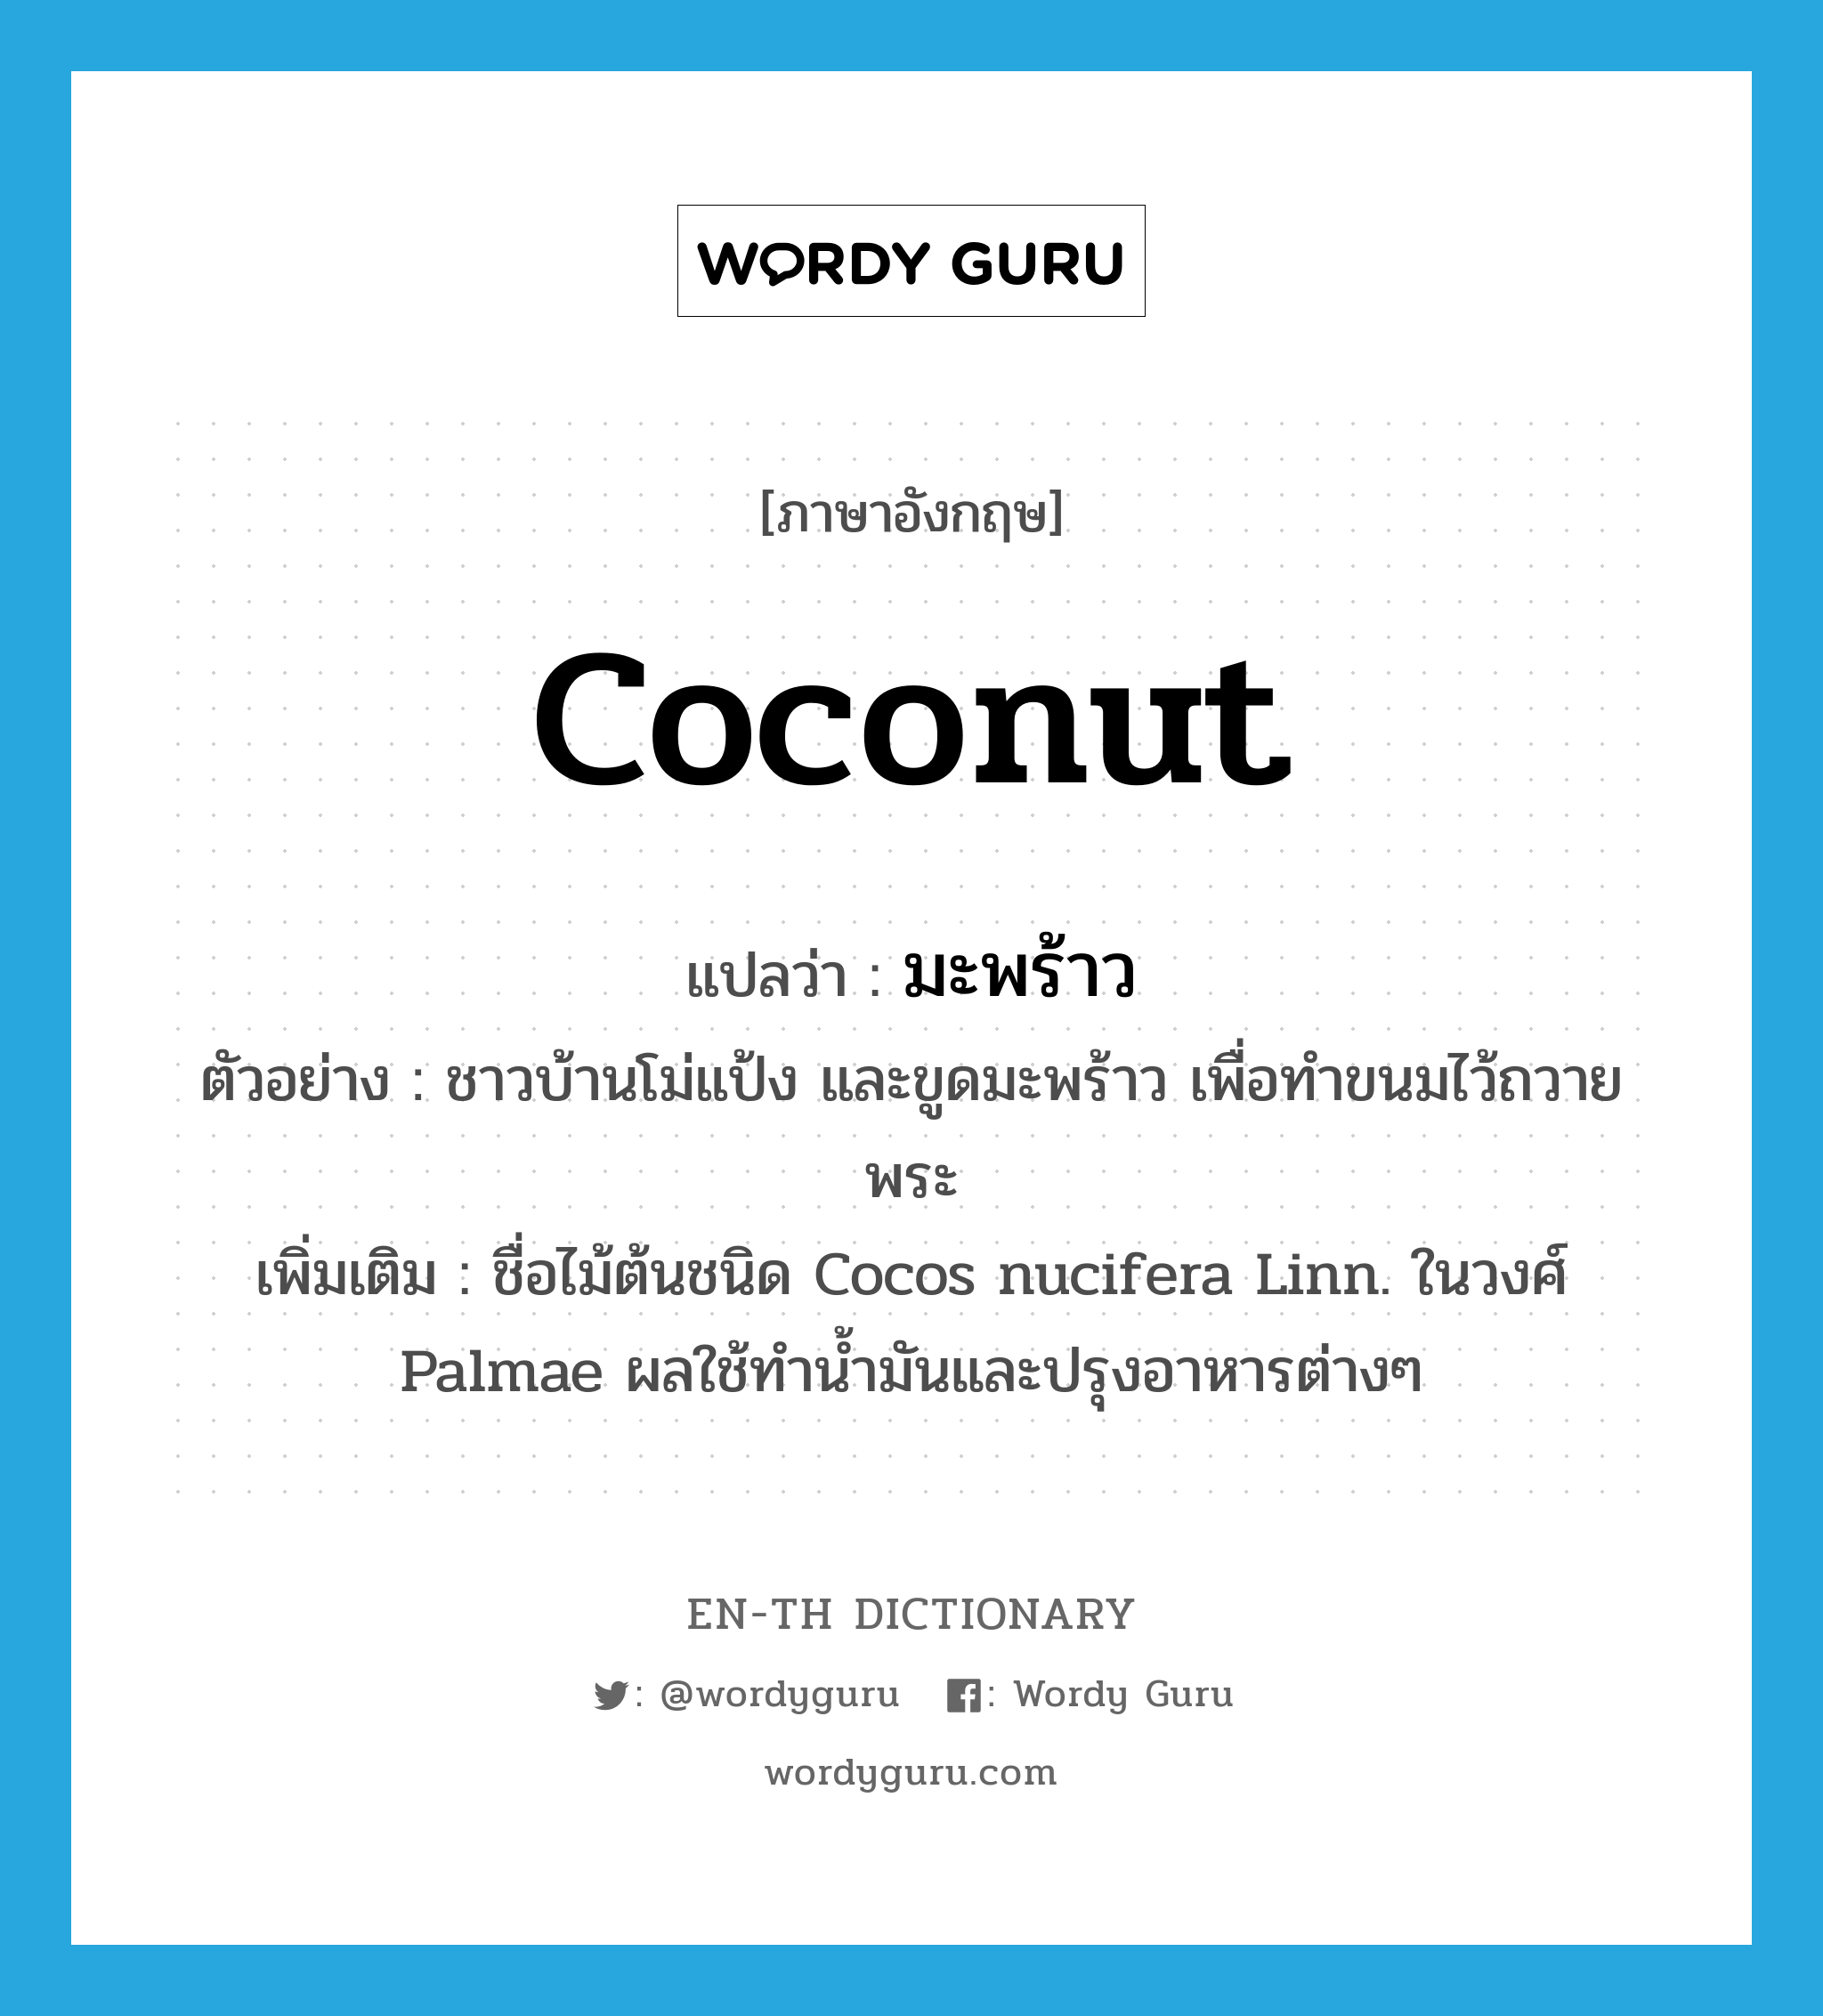 มะพร้าว ภาษาอังกฤษ?, คำศัพท์ภาษาอังกฤษ มะพร้าว แปลว่า coconut ประเภท N ตัวอย่าง ชาวบ้านโม่แป้ง และขูดมะพร้าว เพื่อทำขนมไว้ถวายพระ เพิ่มเติม ชื่อไม้ต้นชนิด Cocos nucifera Linn. ในวงศ์ Palmae ผลใช้ทำน้ำมันและปรุงอาหารต่างๆ หมวด N